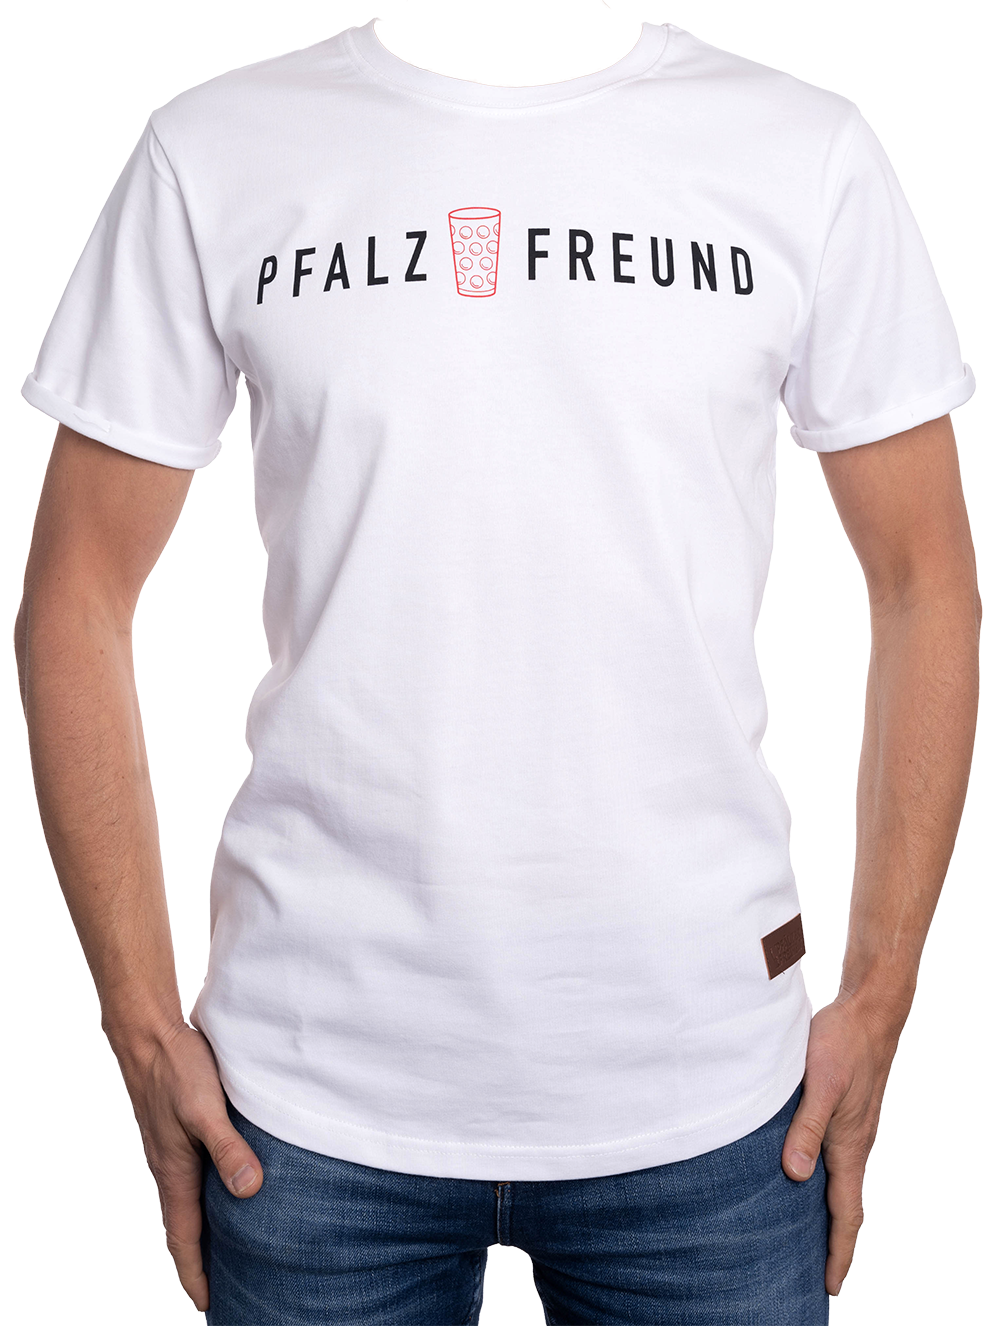 Herren T-Shirt "Pfalzfreund" - Pfälzer Freiheit